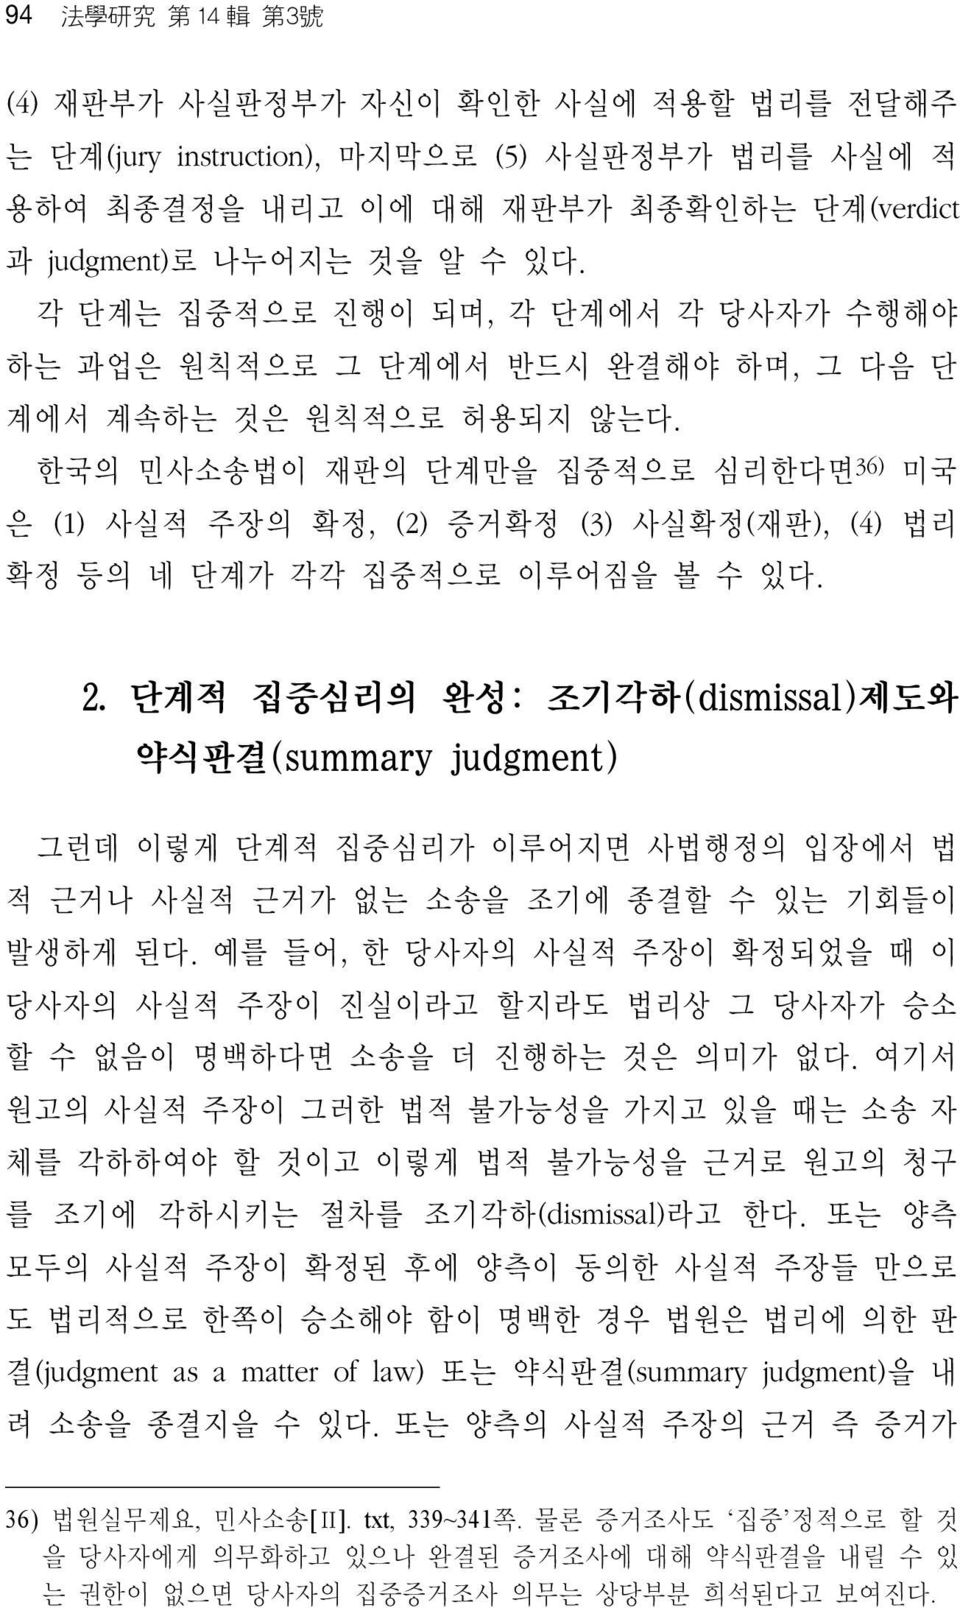 한국의 민사소송법이 재판의 단계만을 집중적으로 심리한다면 36) 미국 은 (1) 사실적 주장의 확정, (2) 증거확정 (3) 사실확정(재판), (4) 법리 확정 등의 네 단계가 각각 집중적으로 이루어짐을 볼 수 있다. 2.